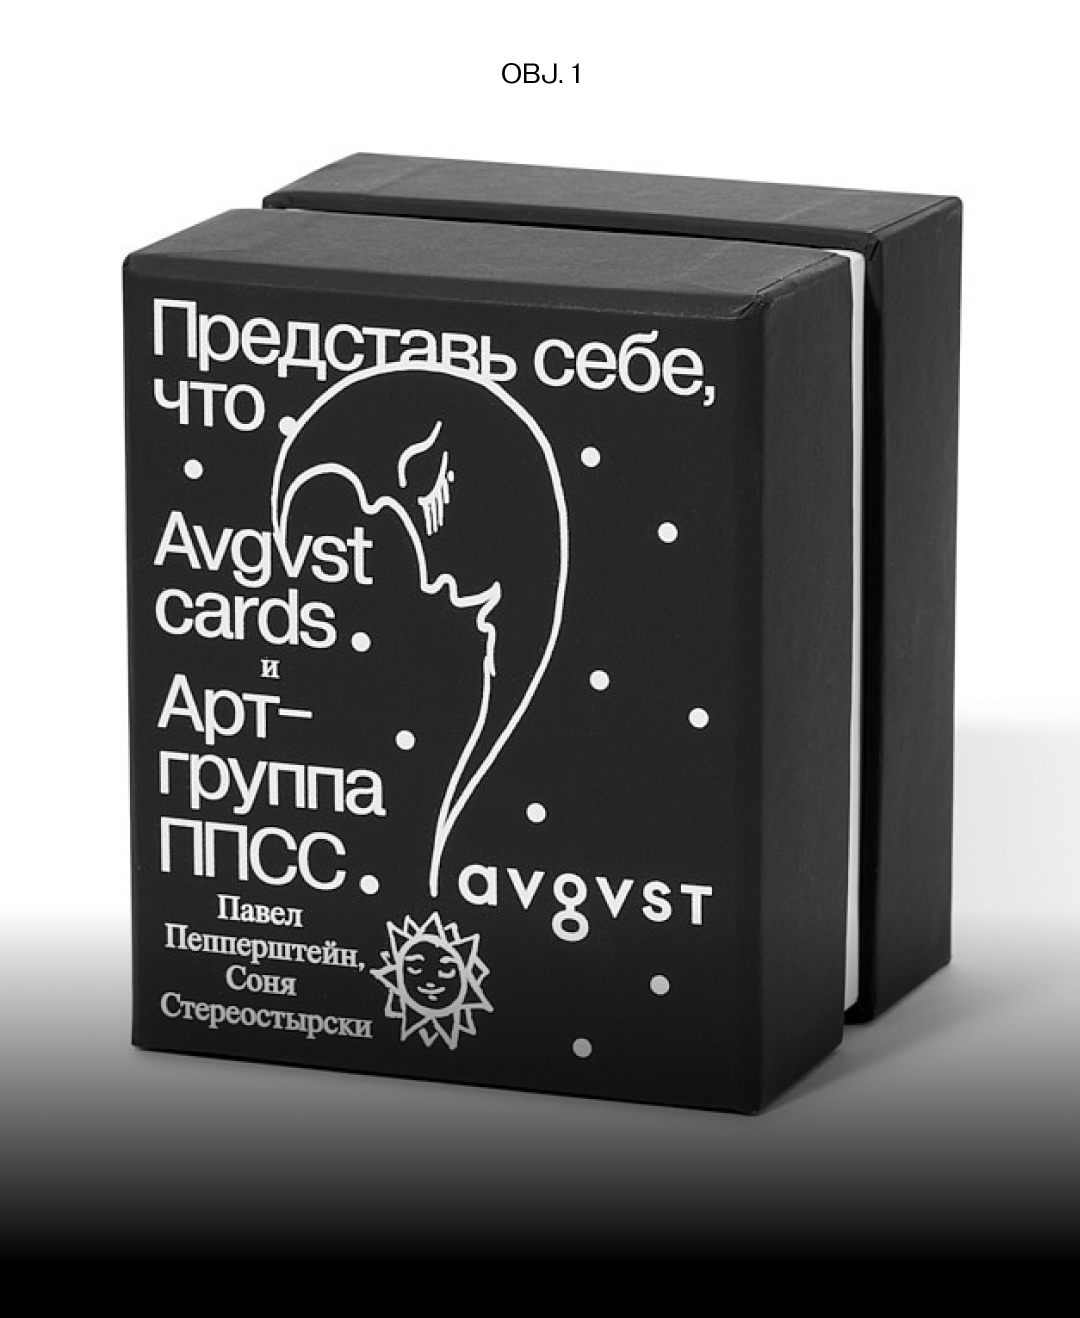 Avgvst выпустил коллекционную колоду с арт-группой ППСС (фото 1)